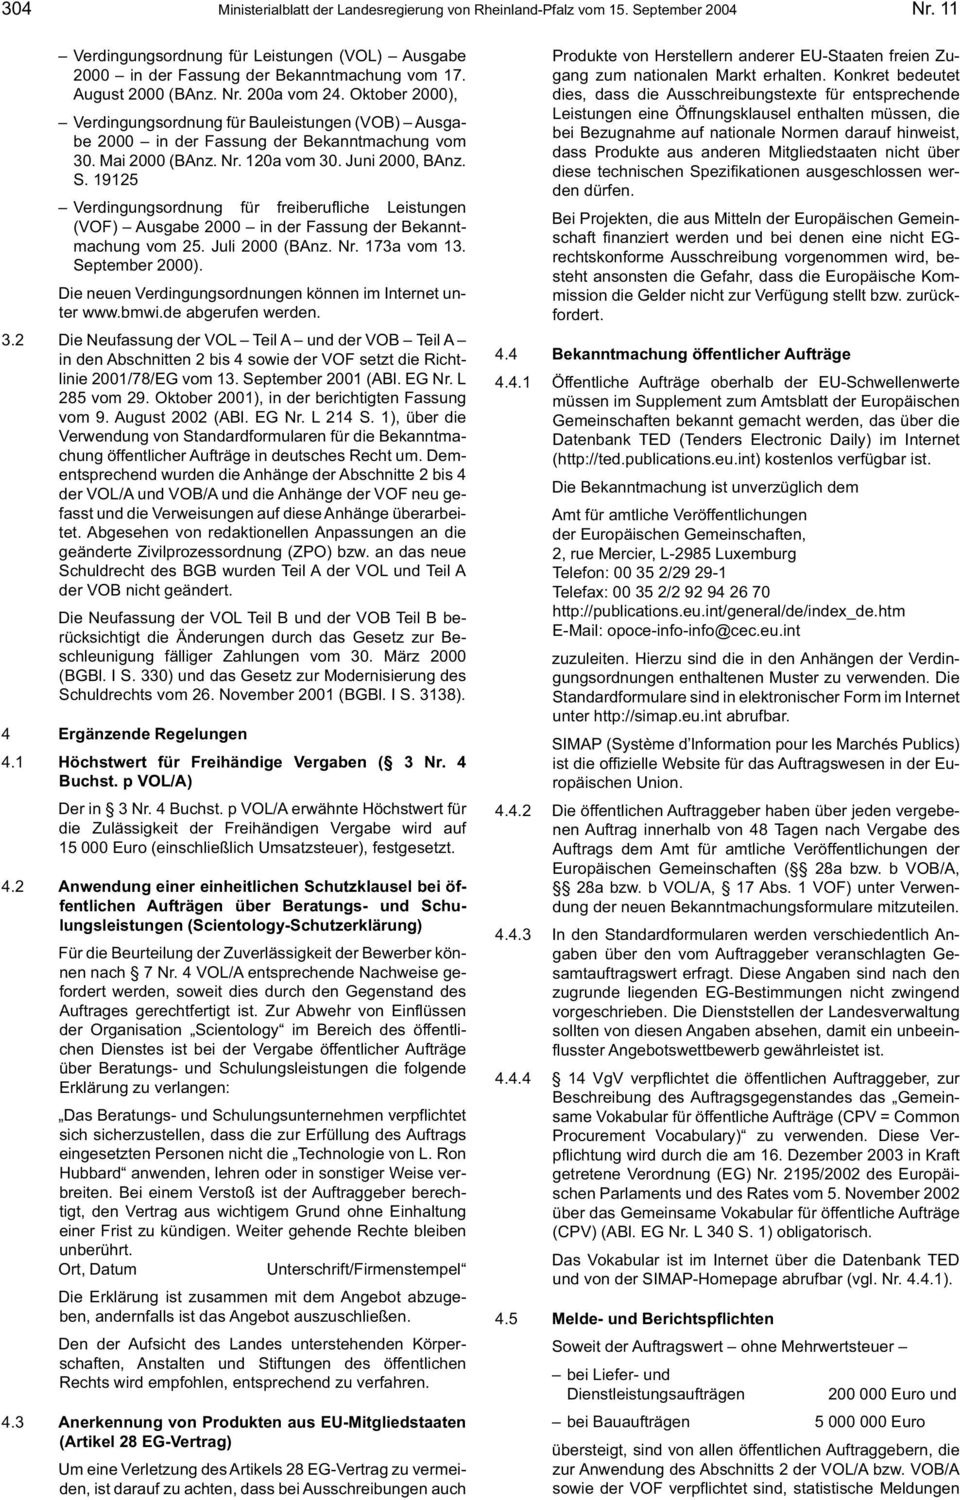 S. 19125 Verdingungsordnung für freiberufliche Leistungen (VOF) Ausgabe 2000 in der Fassung der Bekanntmachung vom 25. Juli 2000 (BAnz. Nr. 173a vom 13. September 2000).